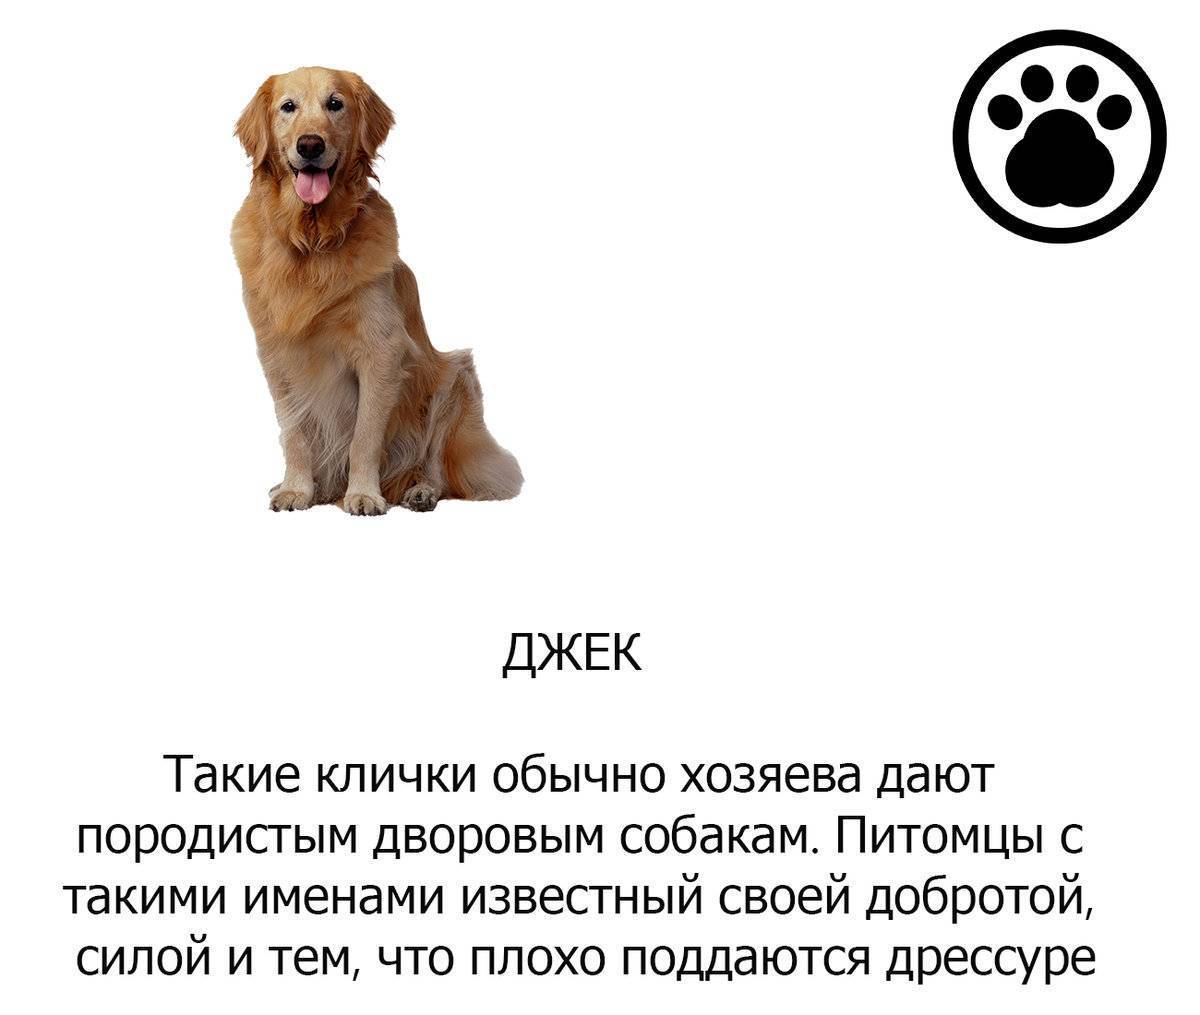 ᐉ самые прикольные и забавные клички для собак - ➡ motildazoo.ru